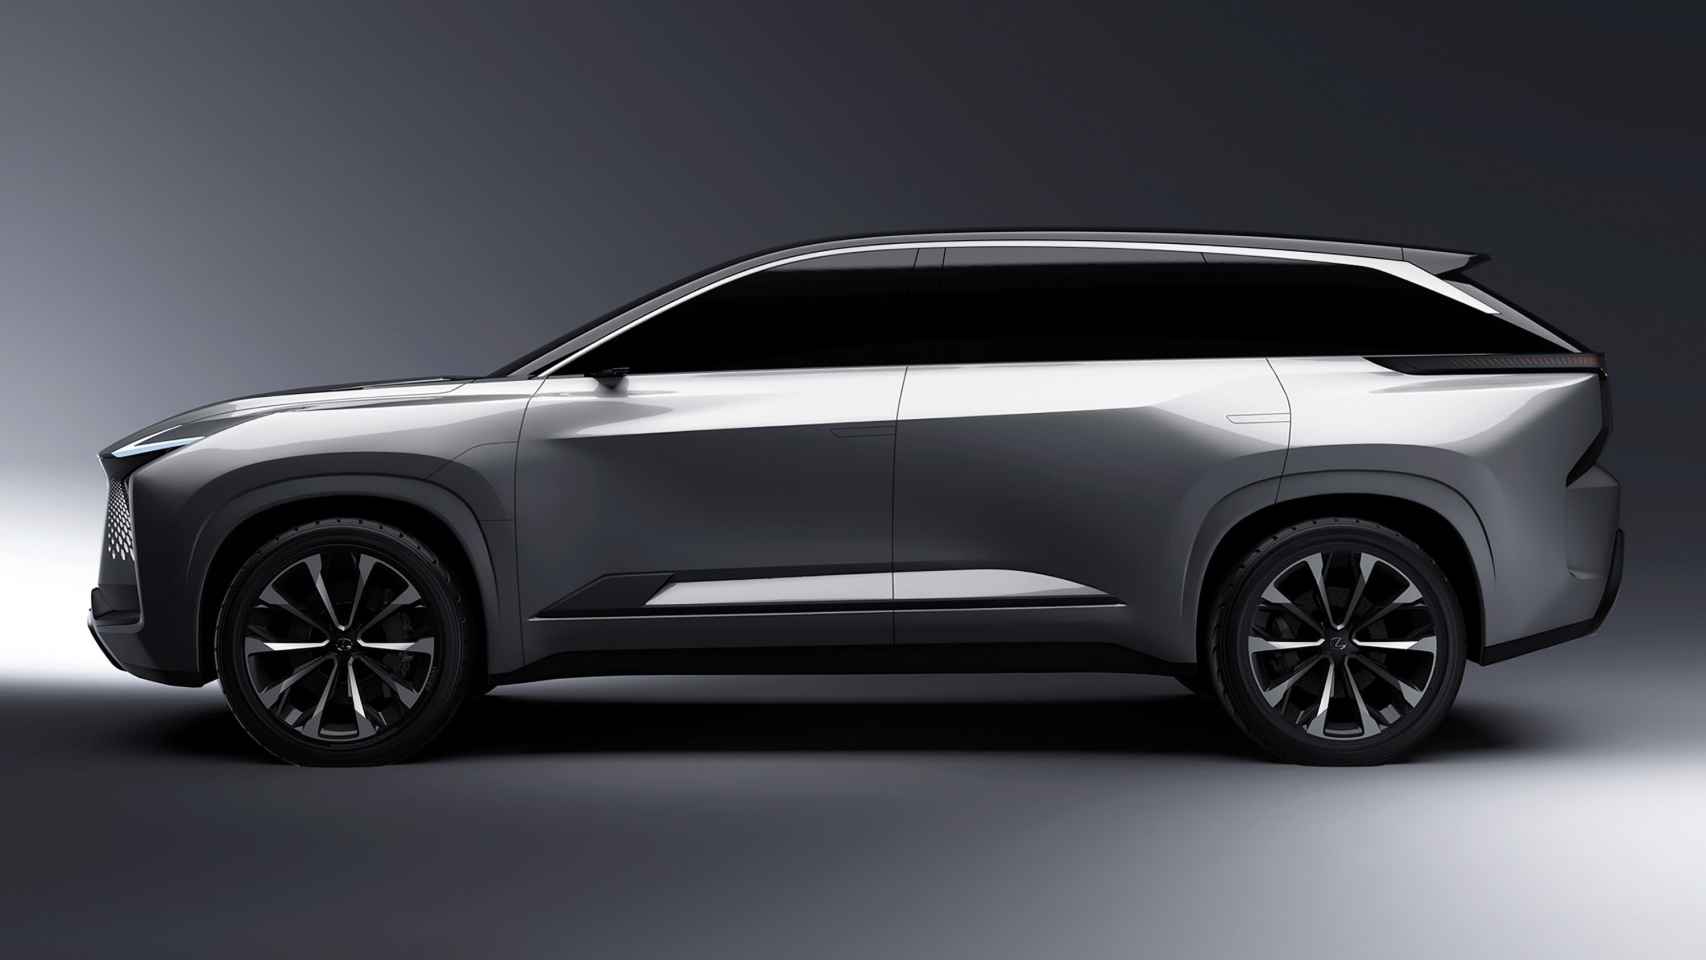 Futuro SUV eléctrico de Lexus.